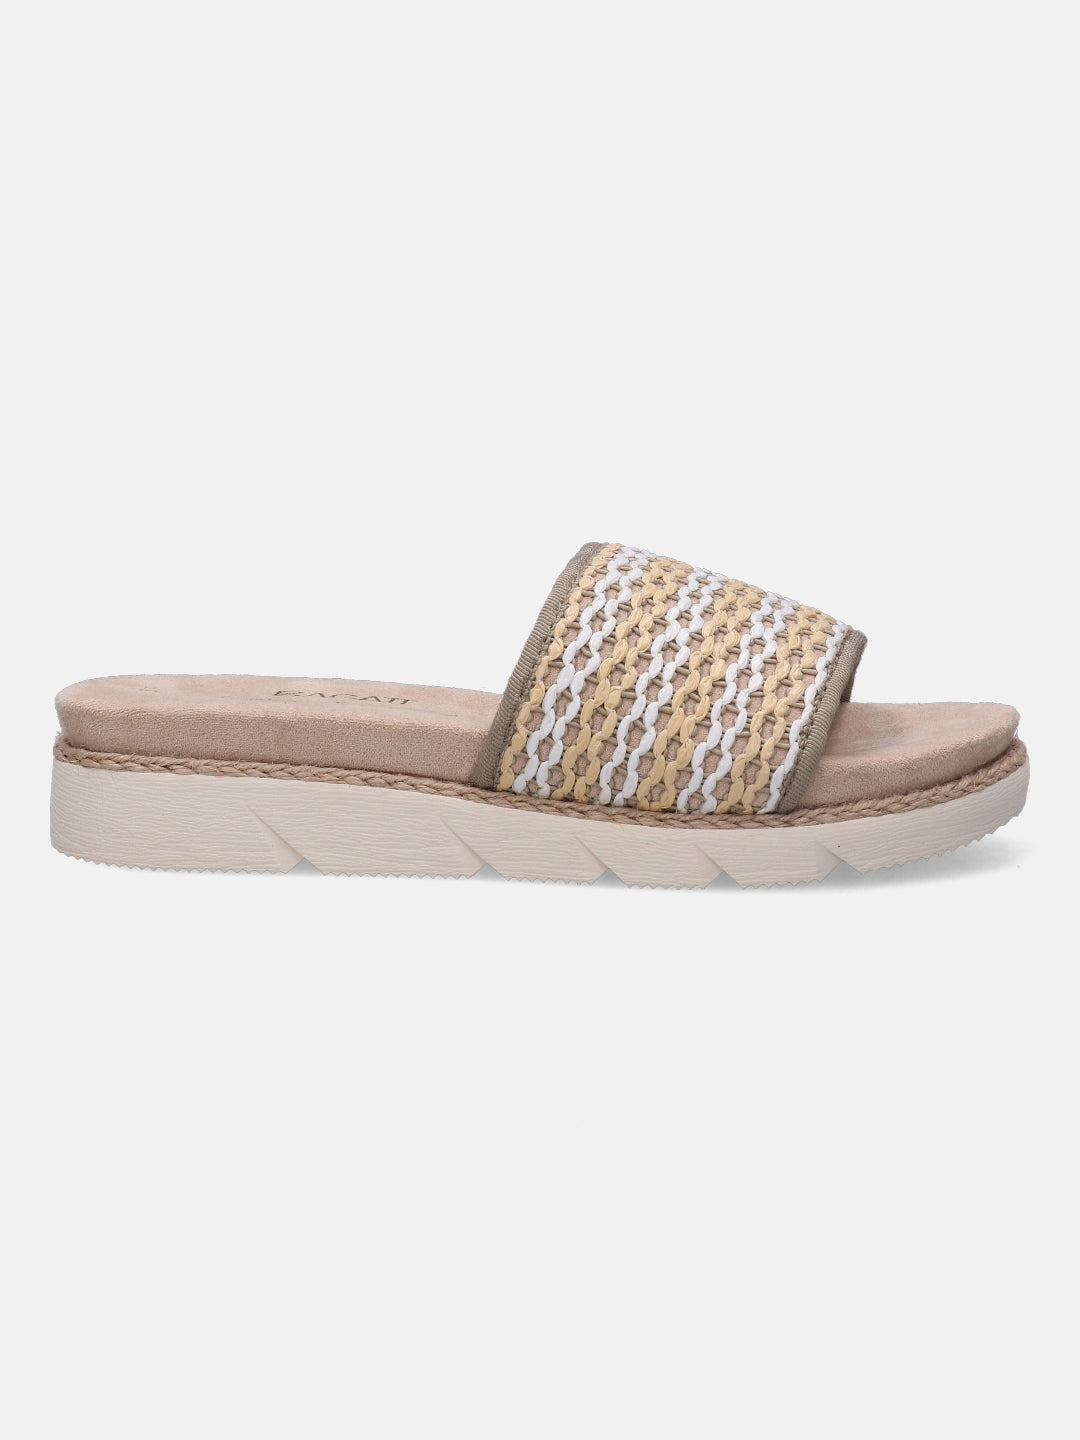 Kiko Beige & Olive Flatform Sandals - BAGATT